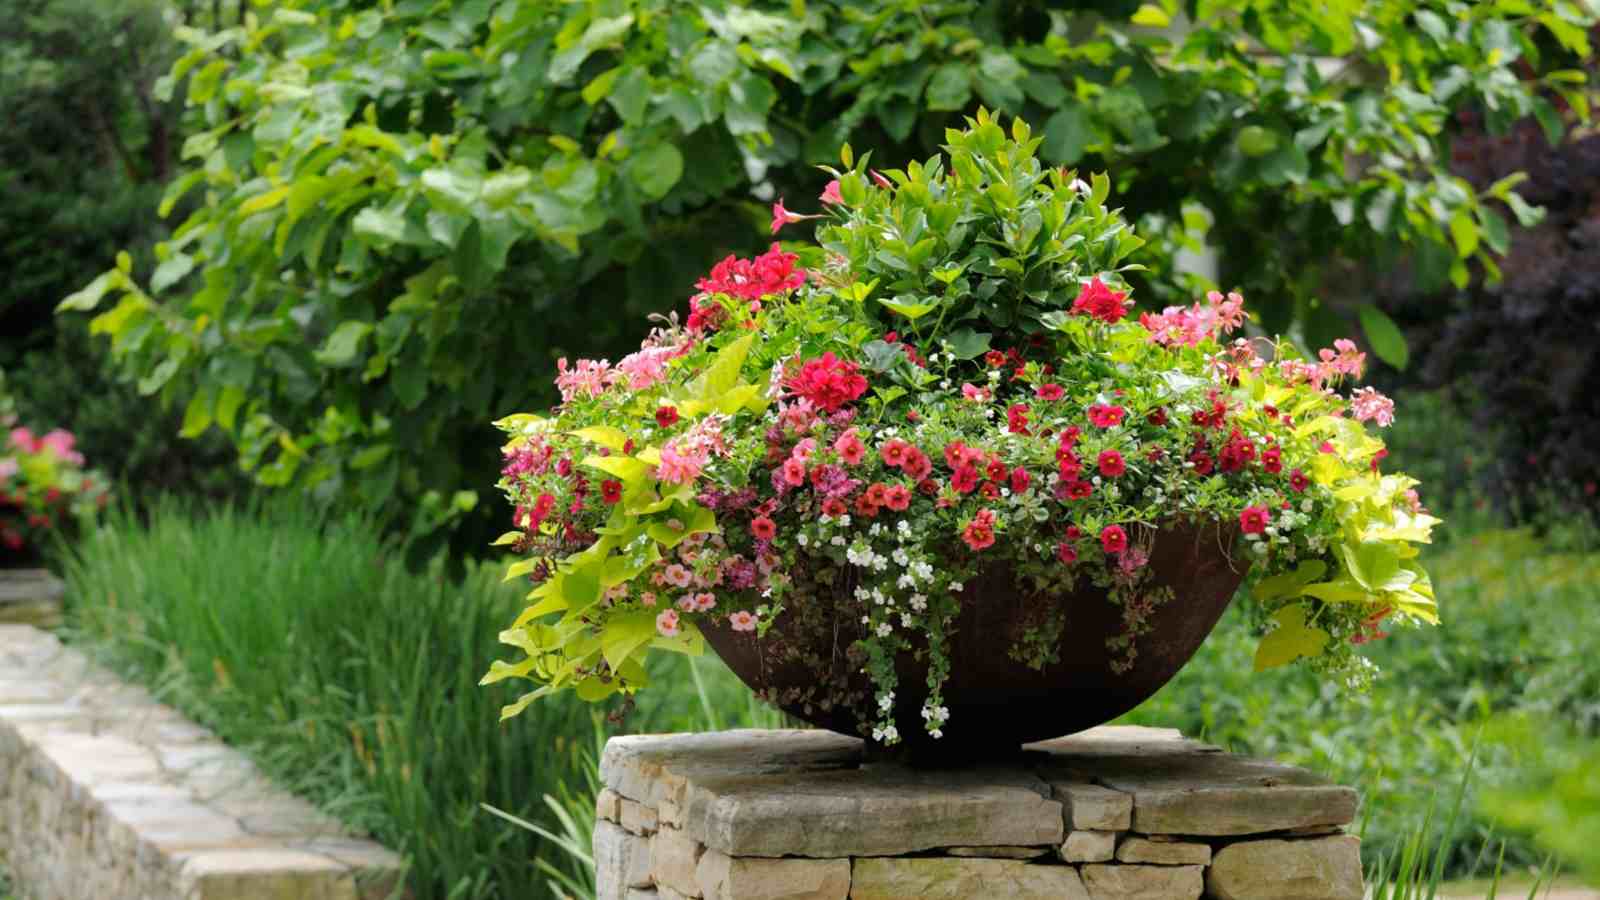 Calibrachoa on a pot on a garden stone